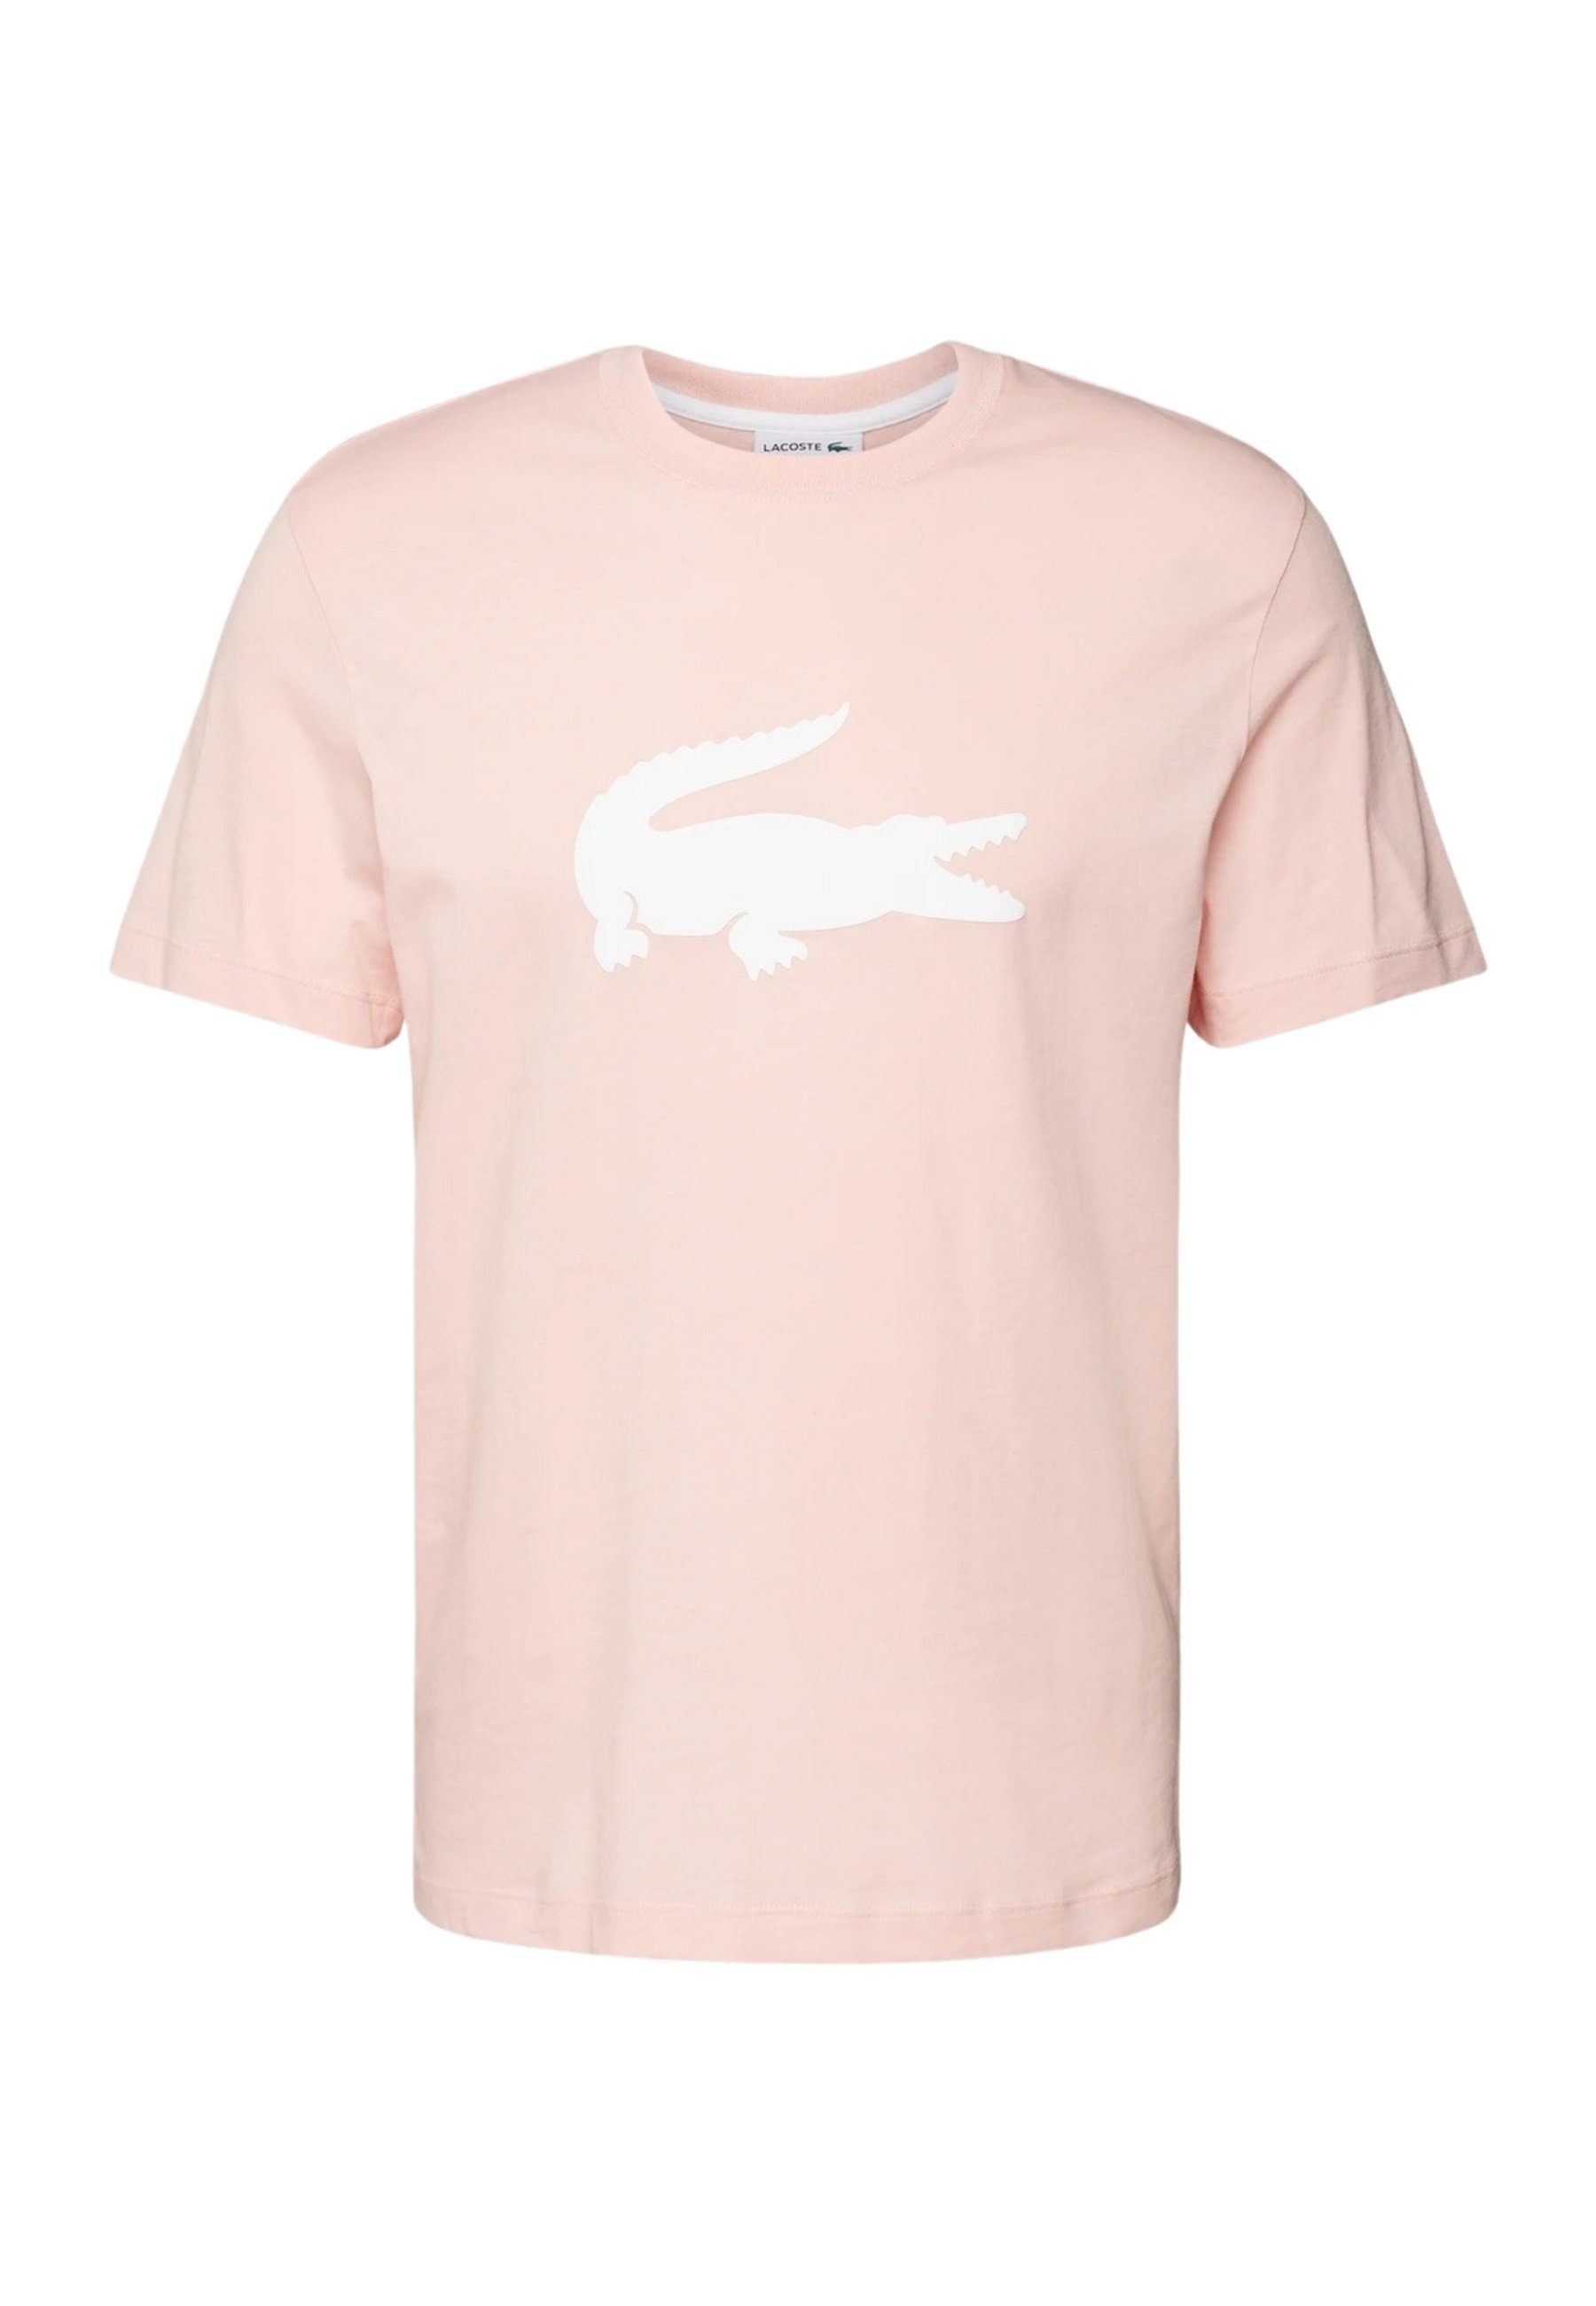 Rosa Lacoste T-Shirts für Herren online kaufen | OTTO